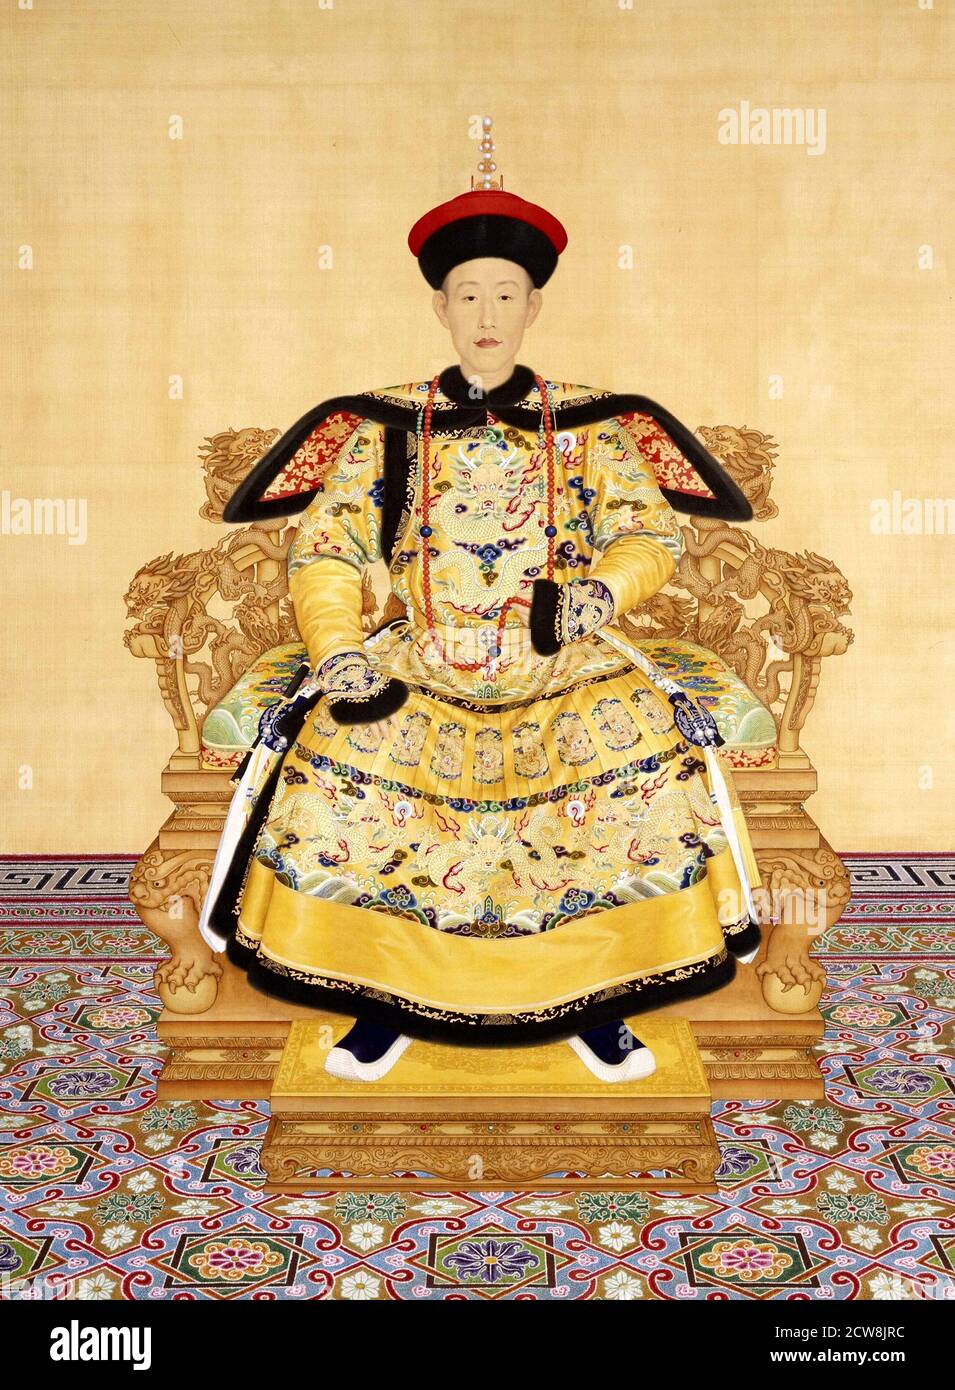 L'empereur Qianlong en robe de cour par Giuseppe Castiglione (1688-1766, nom chinois Lang Shining), 1736. L'empereur Qianlong (1711-1799) était le 6e empereur de la dynastie Qing en Chine Banque D'Images